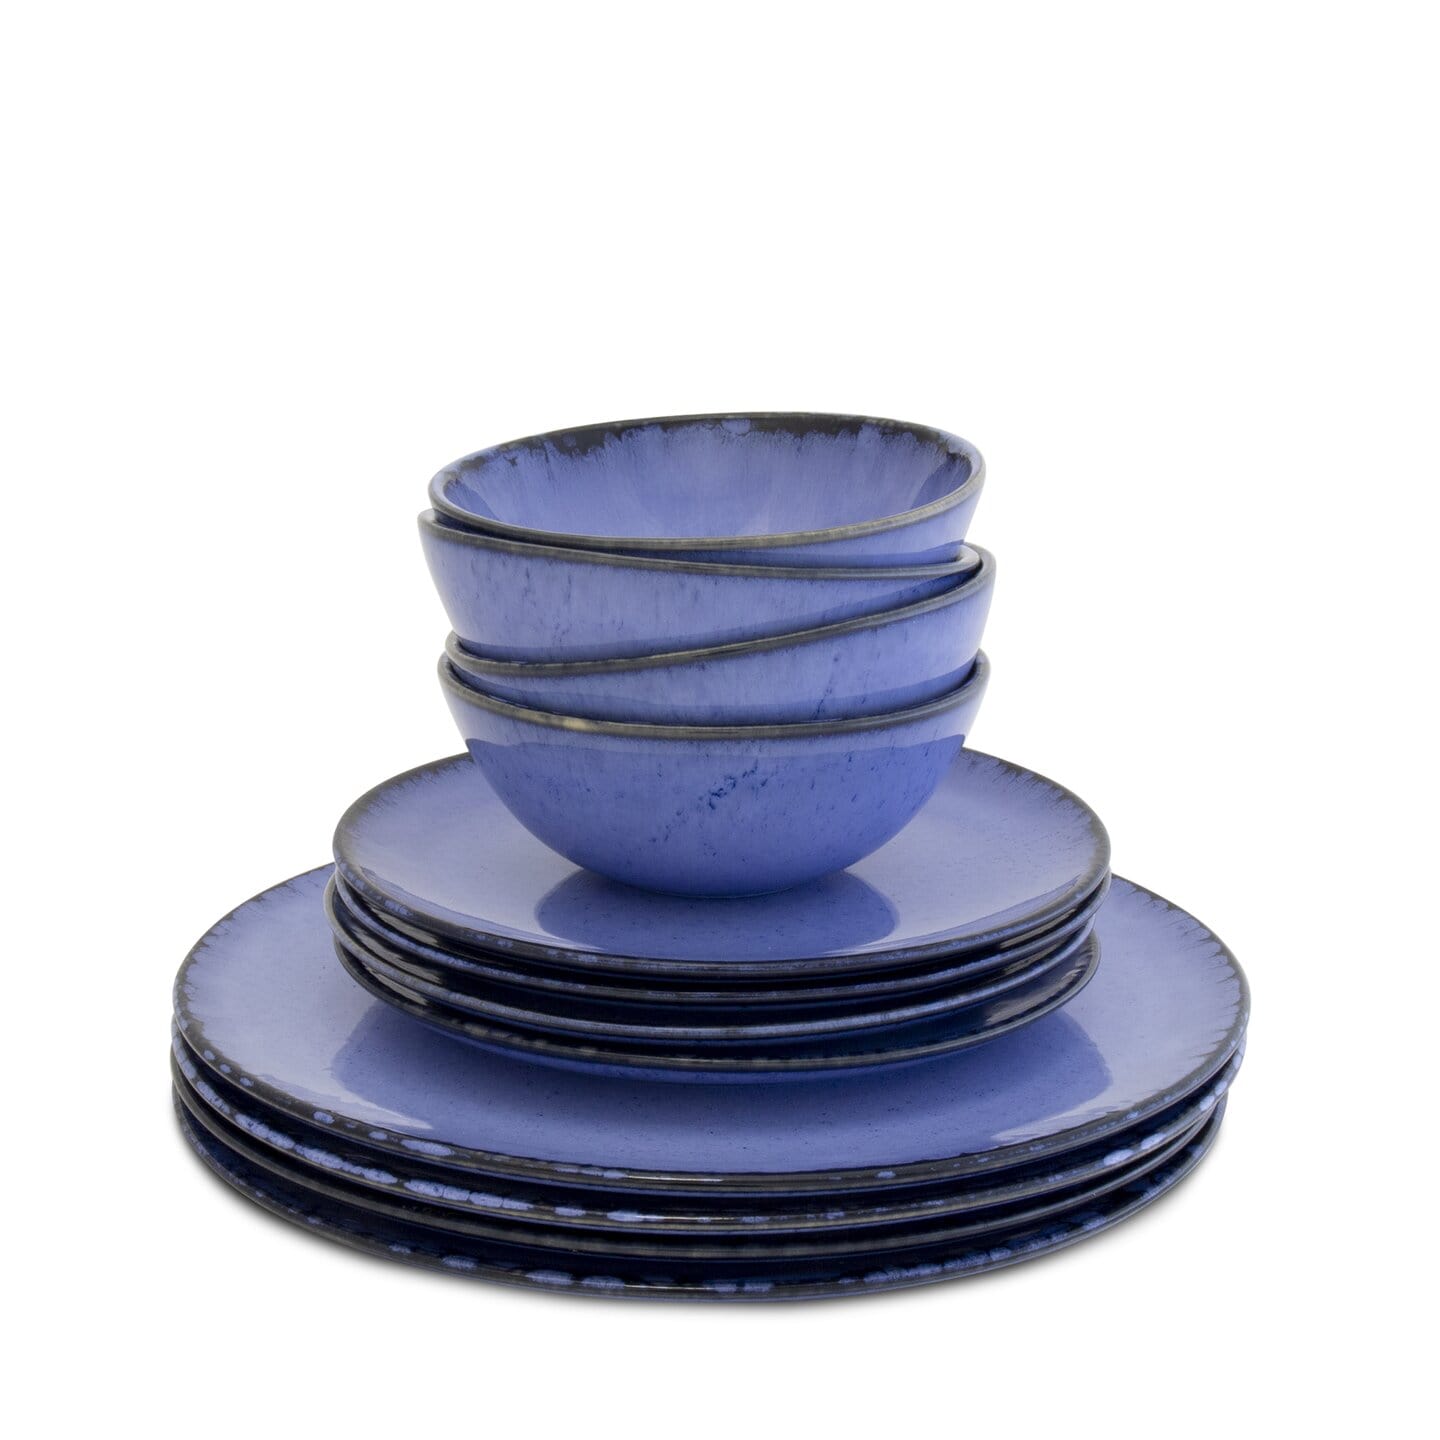 Keramik ♥ Portugal Onlineshop Liebe Steingut Keramik für aus &